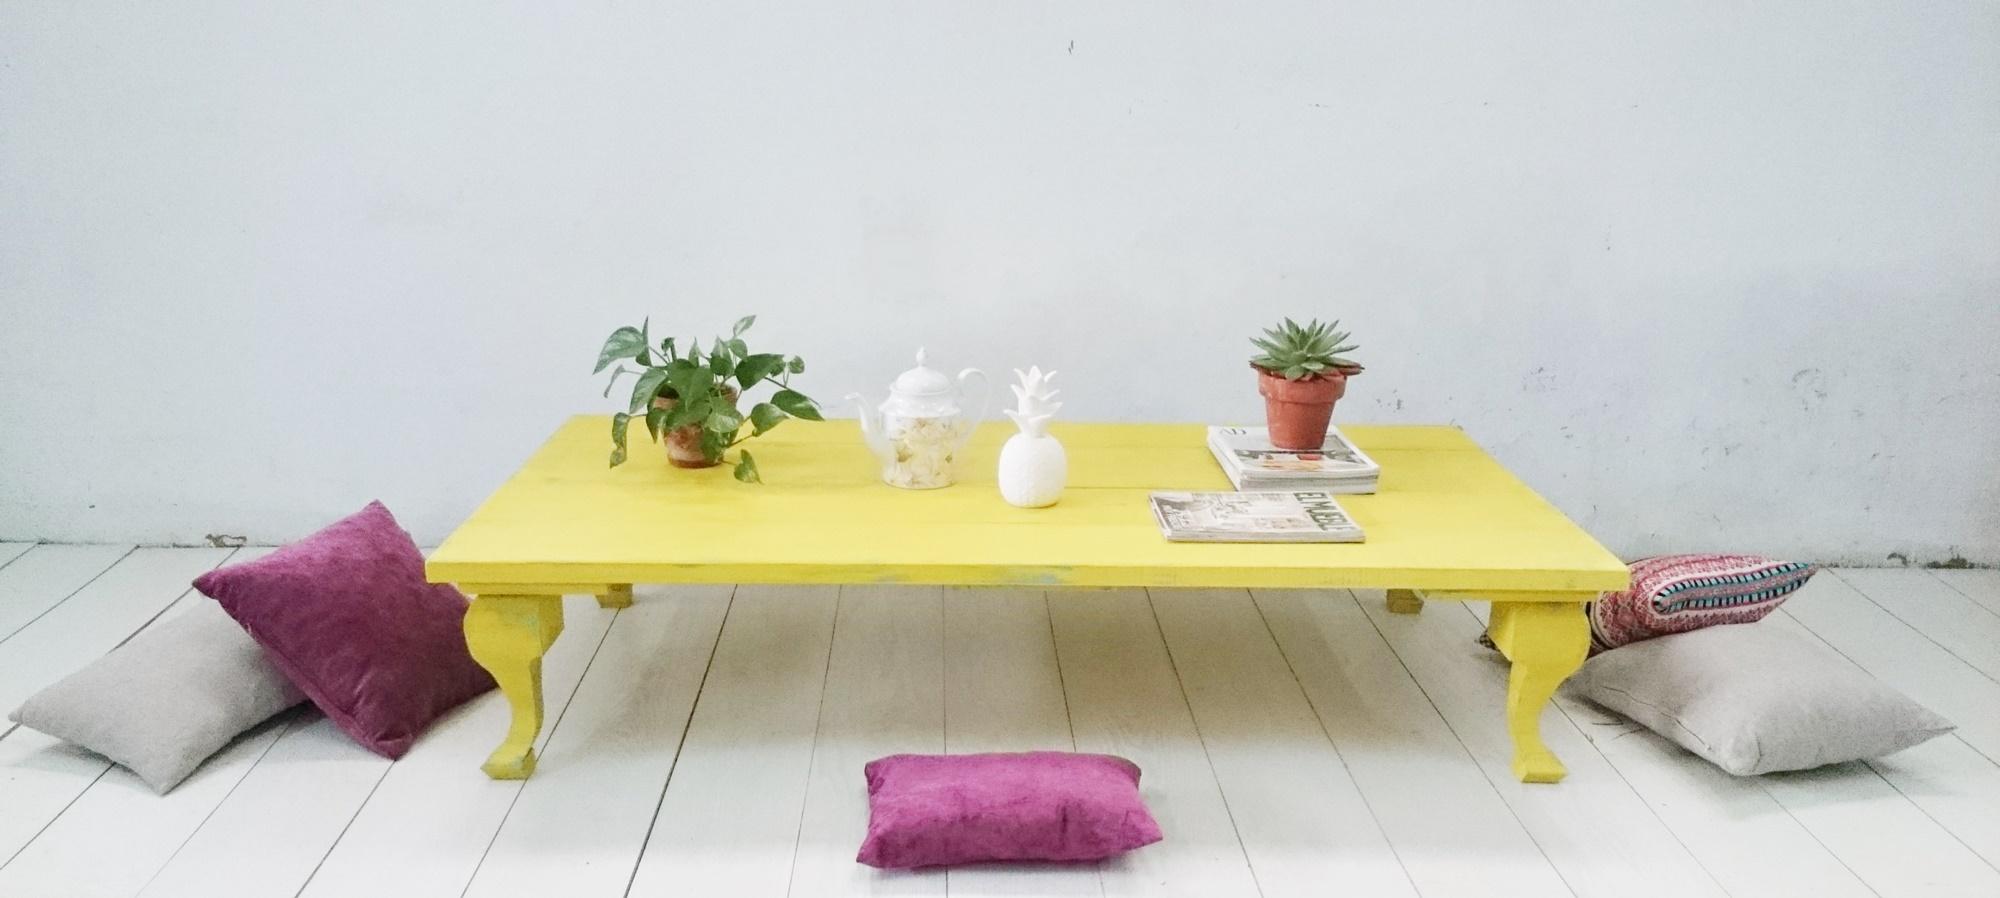 mesa de centro estilo boho en amarillo y mint decapado disponible tienda online bohemianandchic